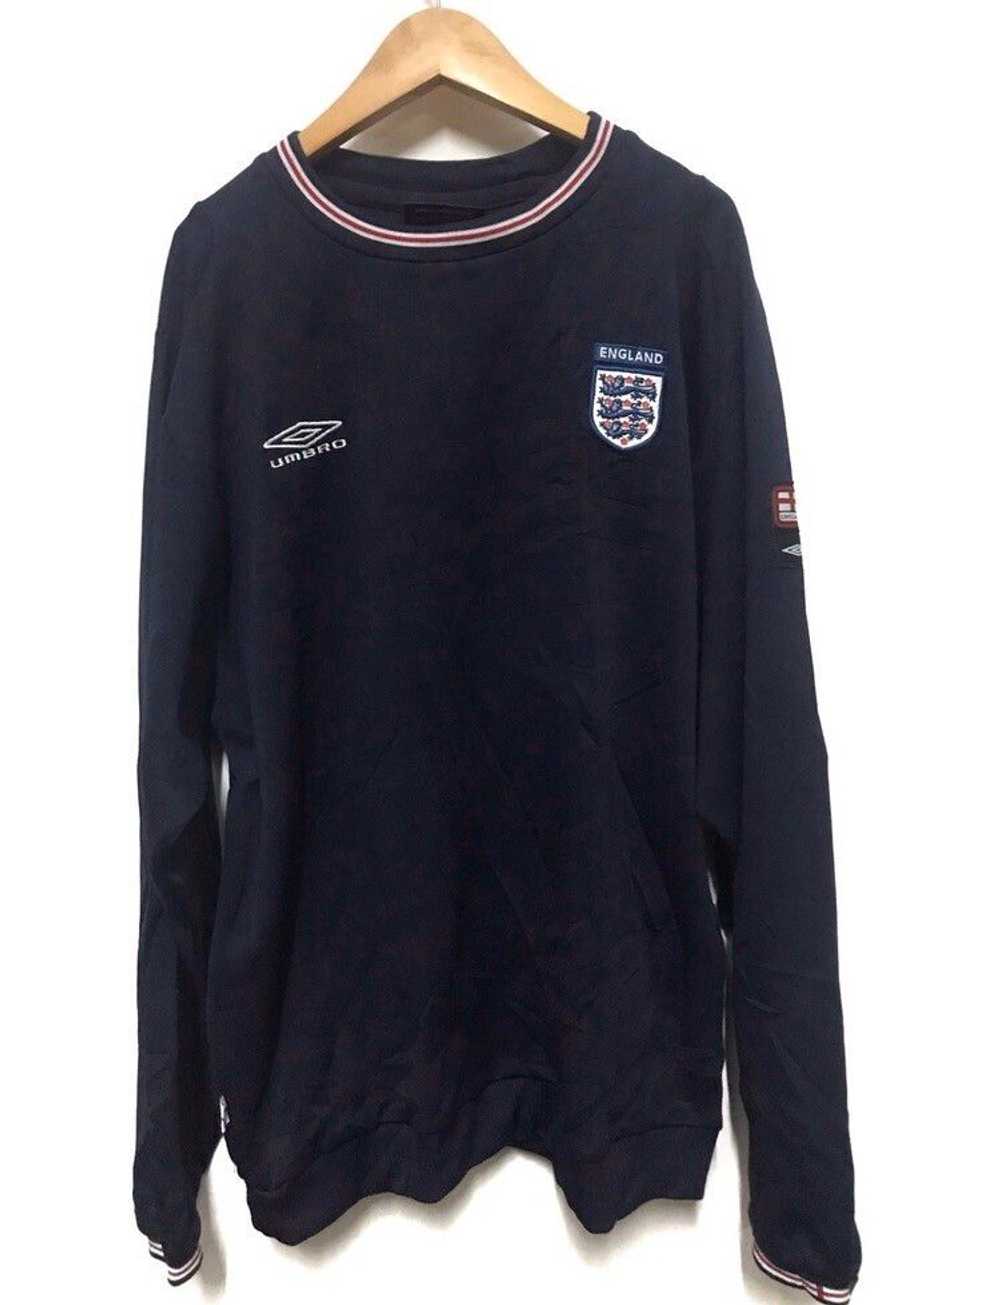 Umbro England football sweatshirt - image 11